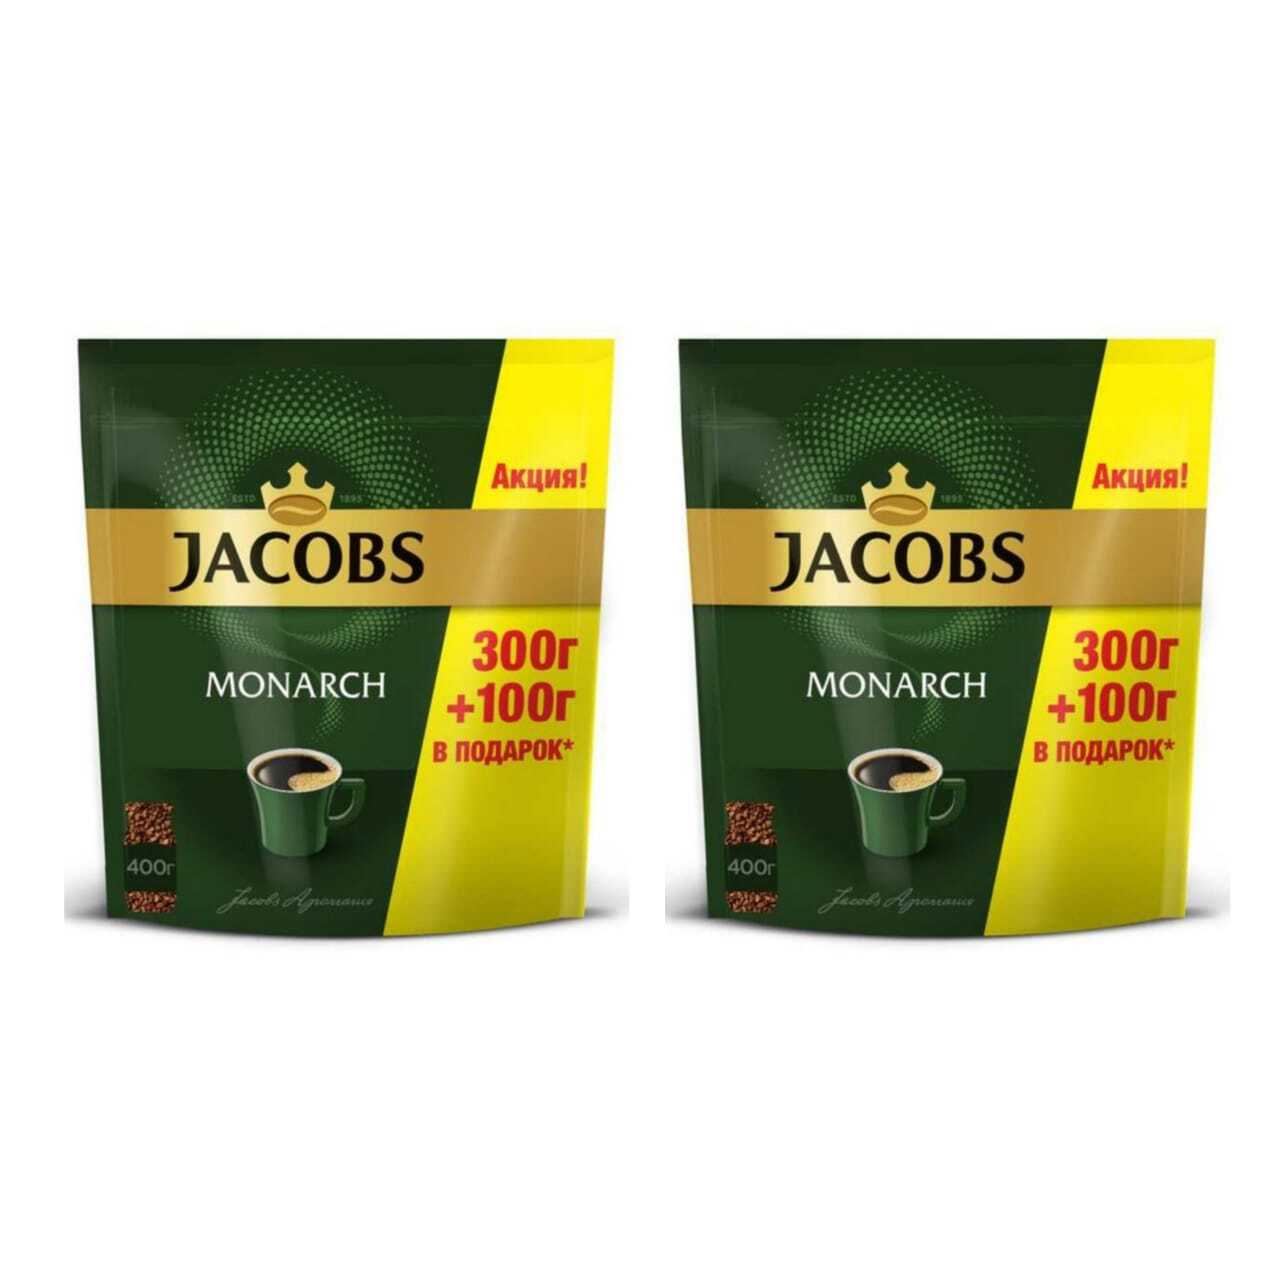 Купить кофе jacobs. Якобс растворимый пакет 400гр. Якобс Монарх 400г. Кофе Jacobs Monarch нат раств пакет 400 гр. Кофе Якобс Монарх 400г.